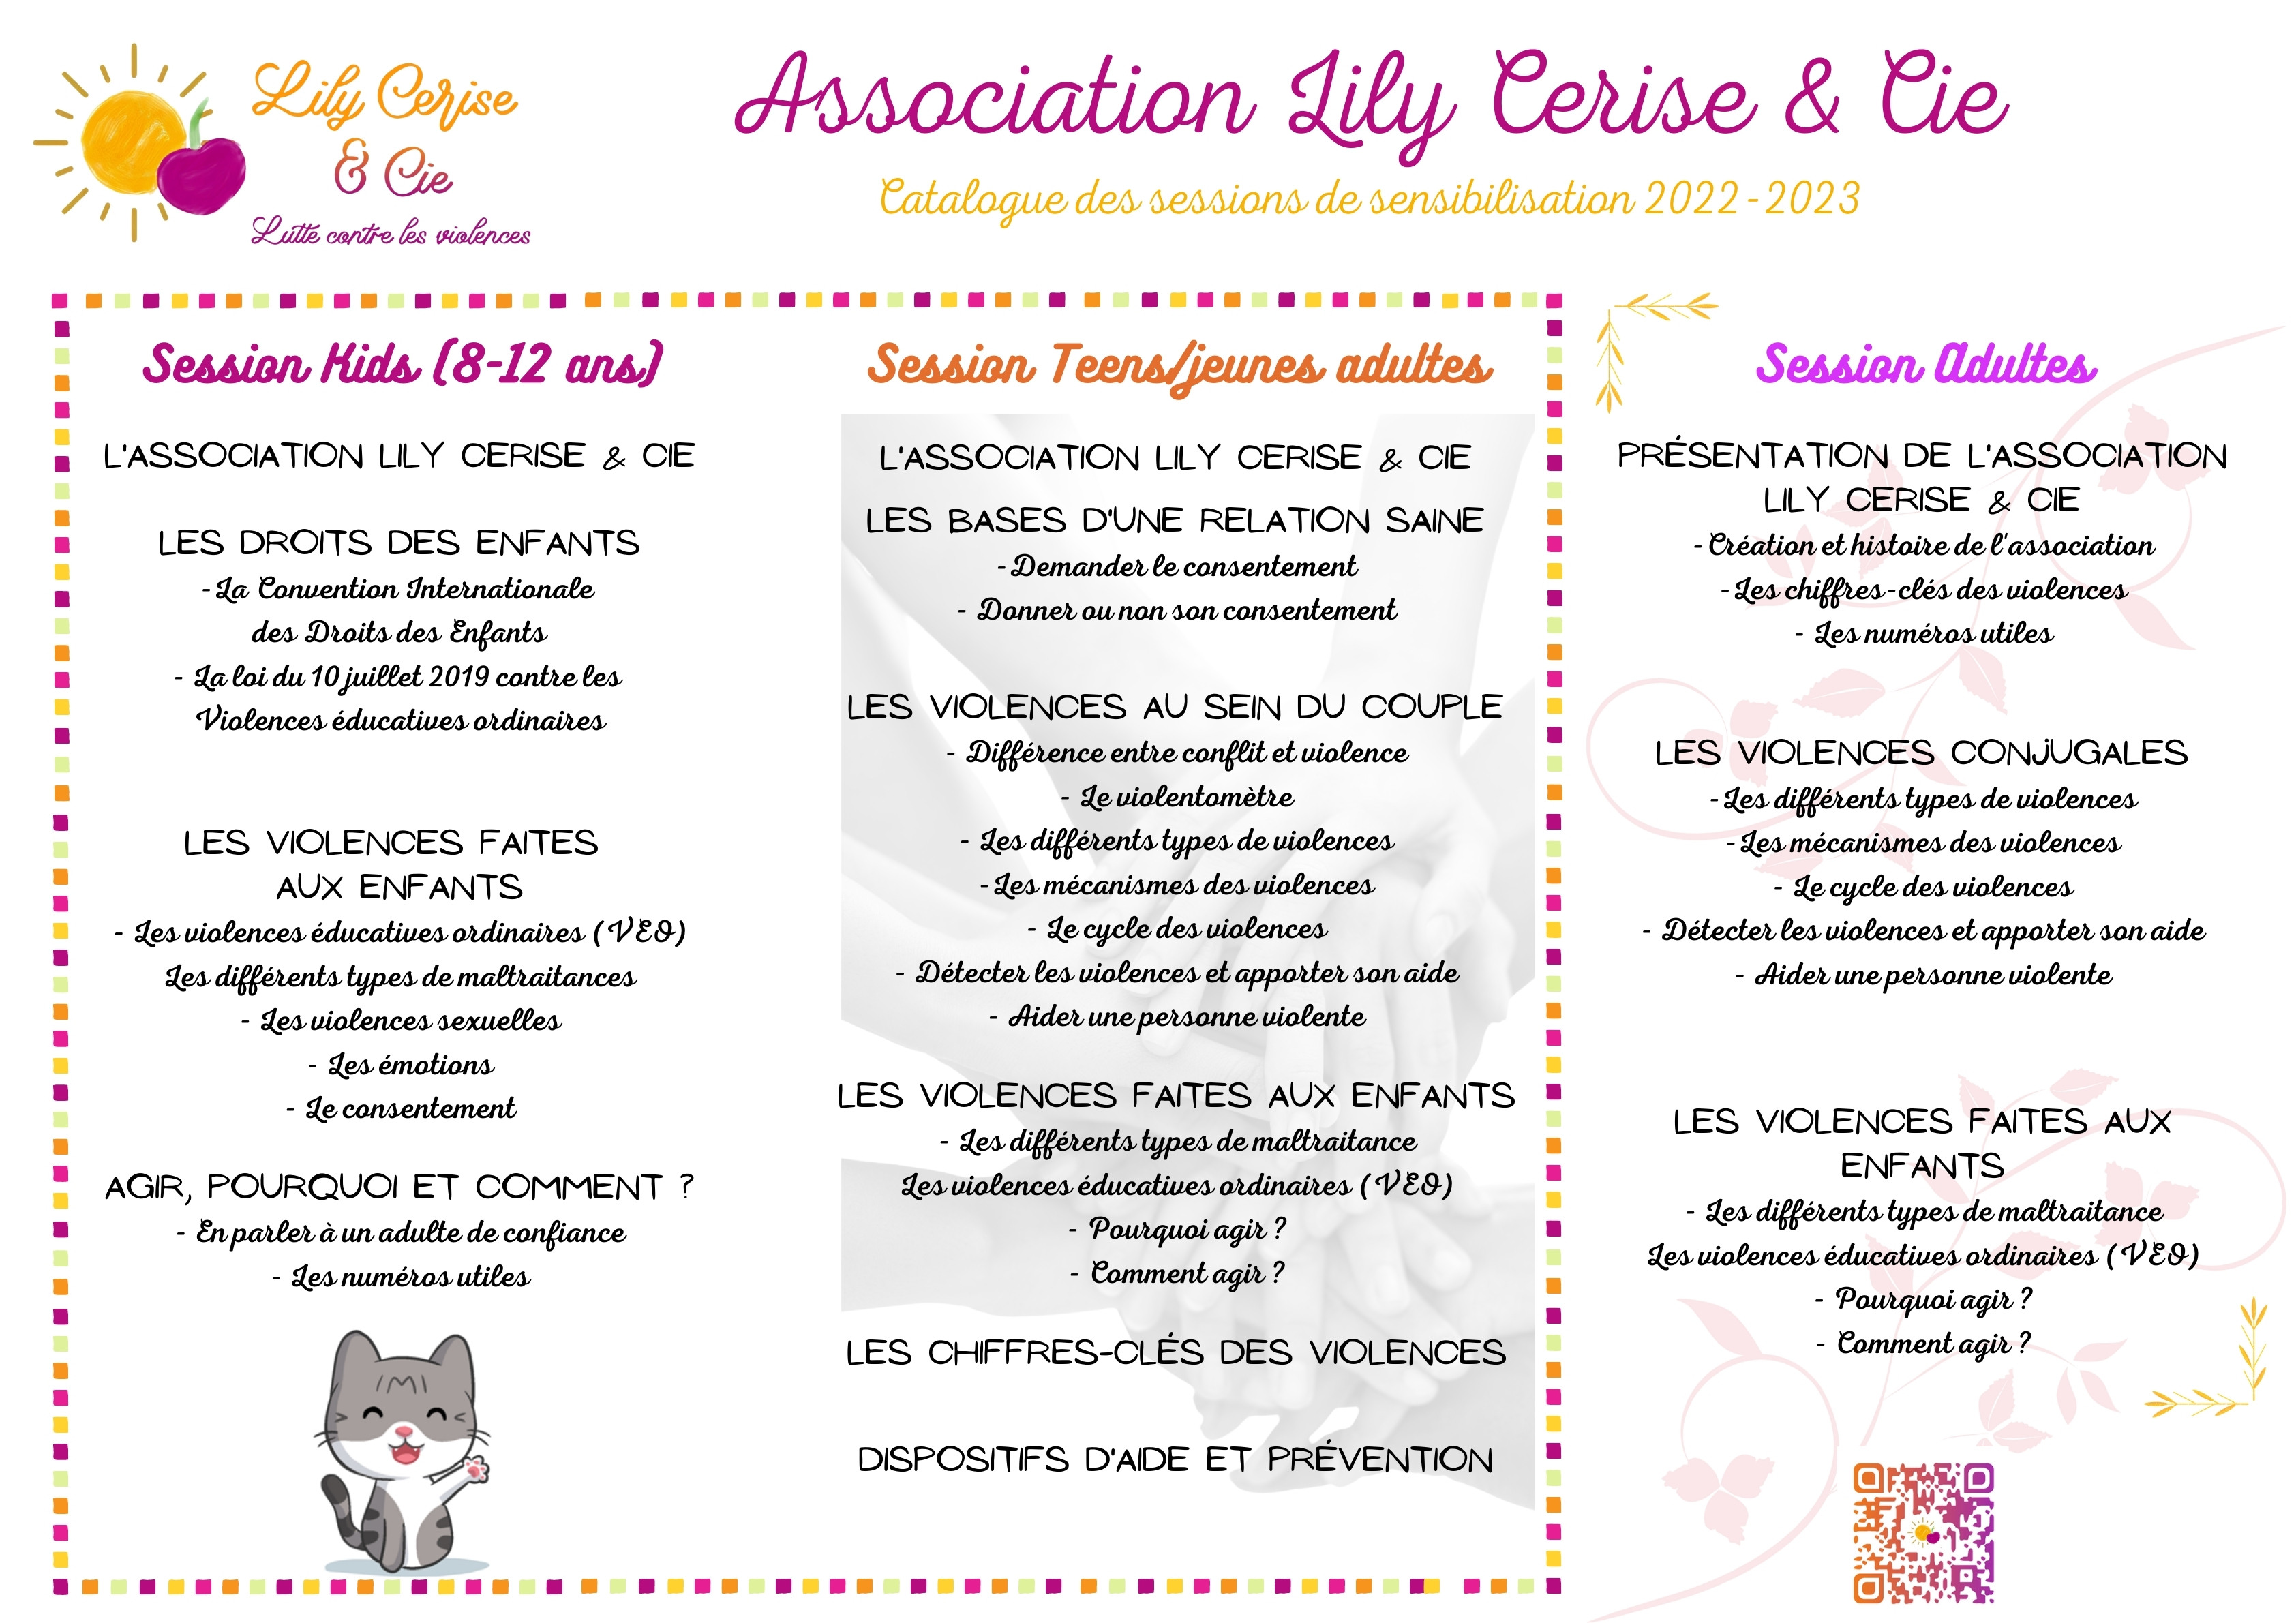 Catalogue des sessions de sensibilisation Lily Cerise et Cie.jpg